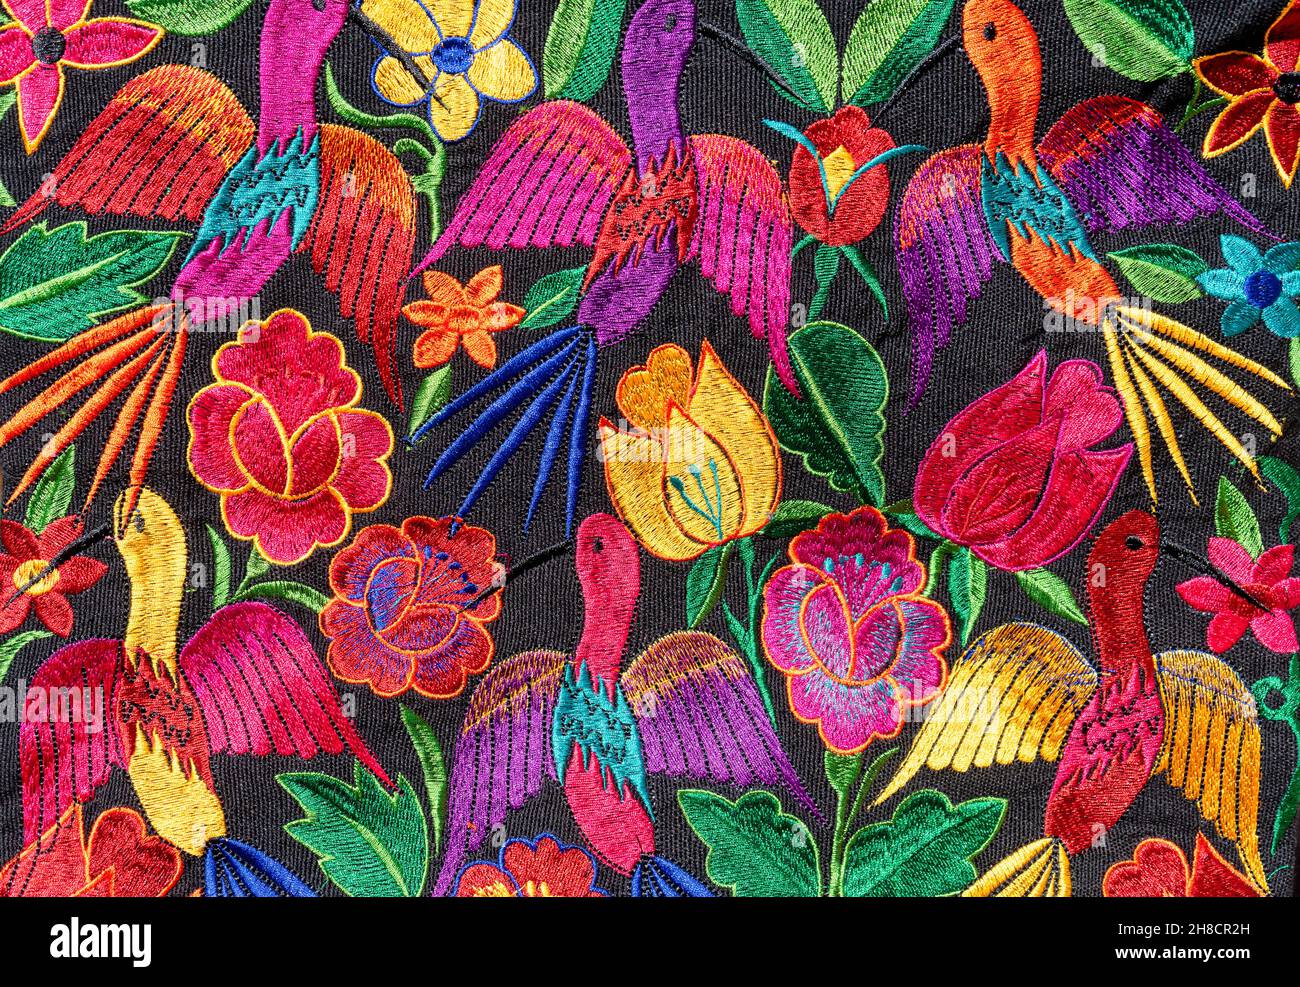 Detail aus buntem Stoff aus Chiapas, Mexiko. Vollständig handgefertigte Designs von Blumen und Vögeln in verschiedenen Farben. Stockfoto